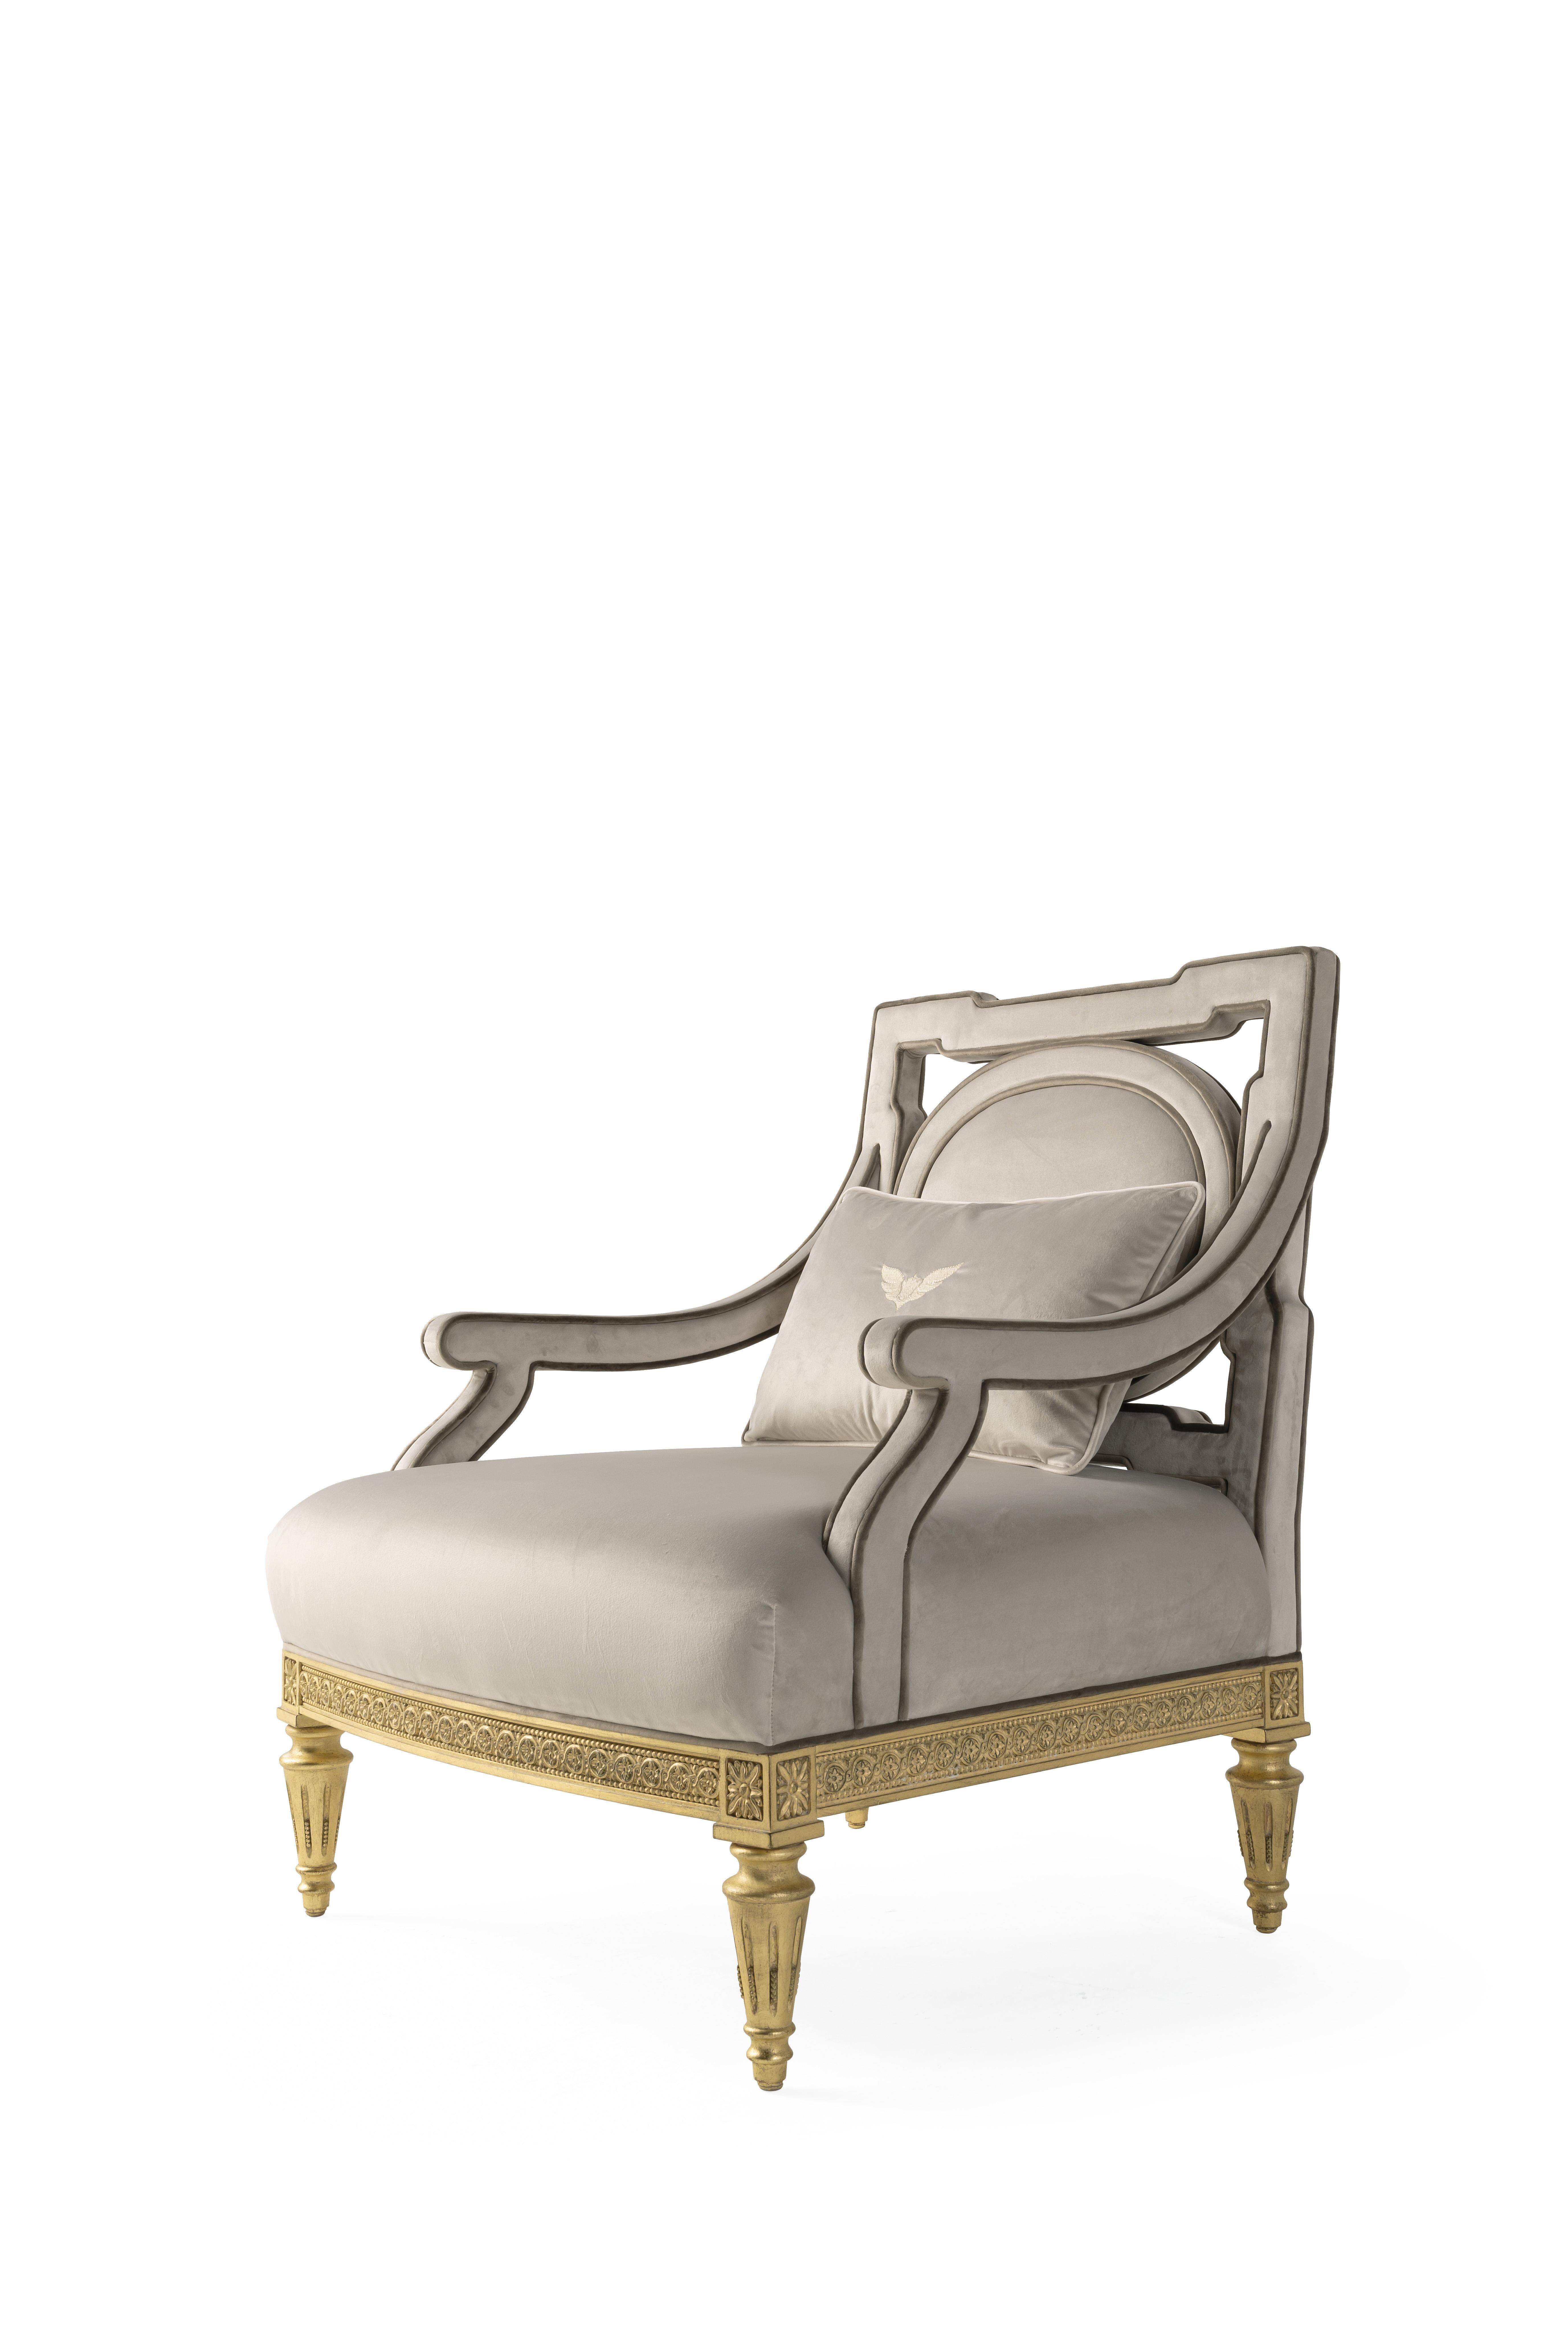 Satin ist ein klassisches Modell im Louis XVI-Stil, das dank der Samtpolsterung in einem zarten Grauton eine moderne Note erhält. Das handgeschnitzte Holzgestell ist mit Blattgold veredelt und die Rückenlehne ist mit einem Medaillon versehen, dessen